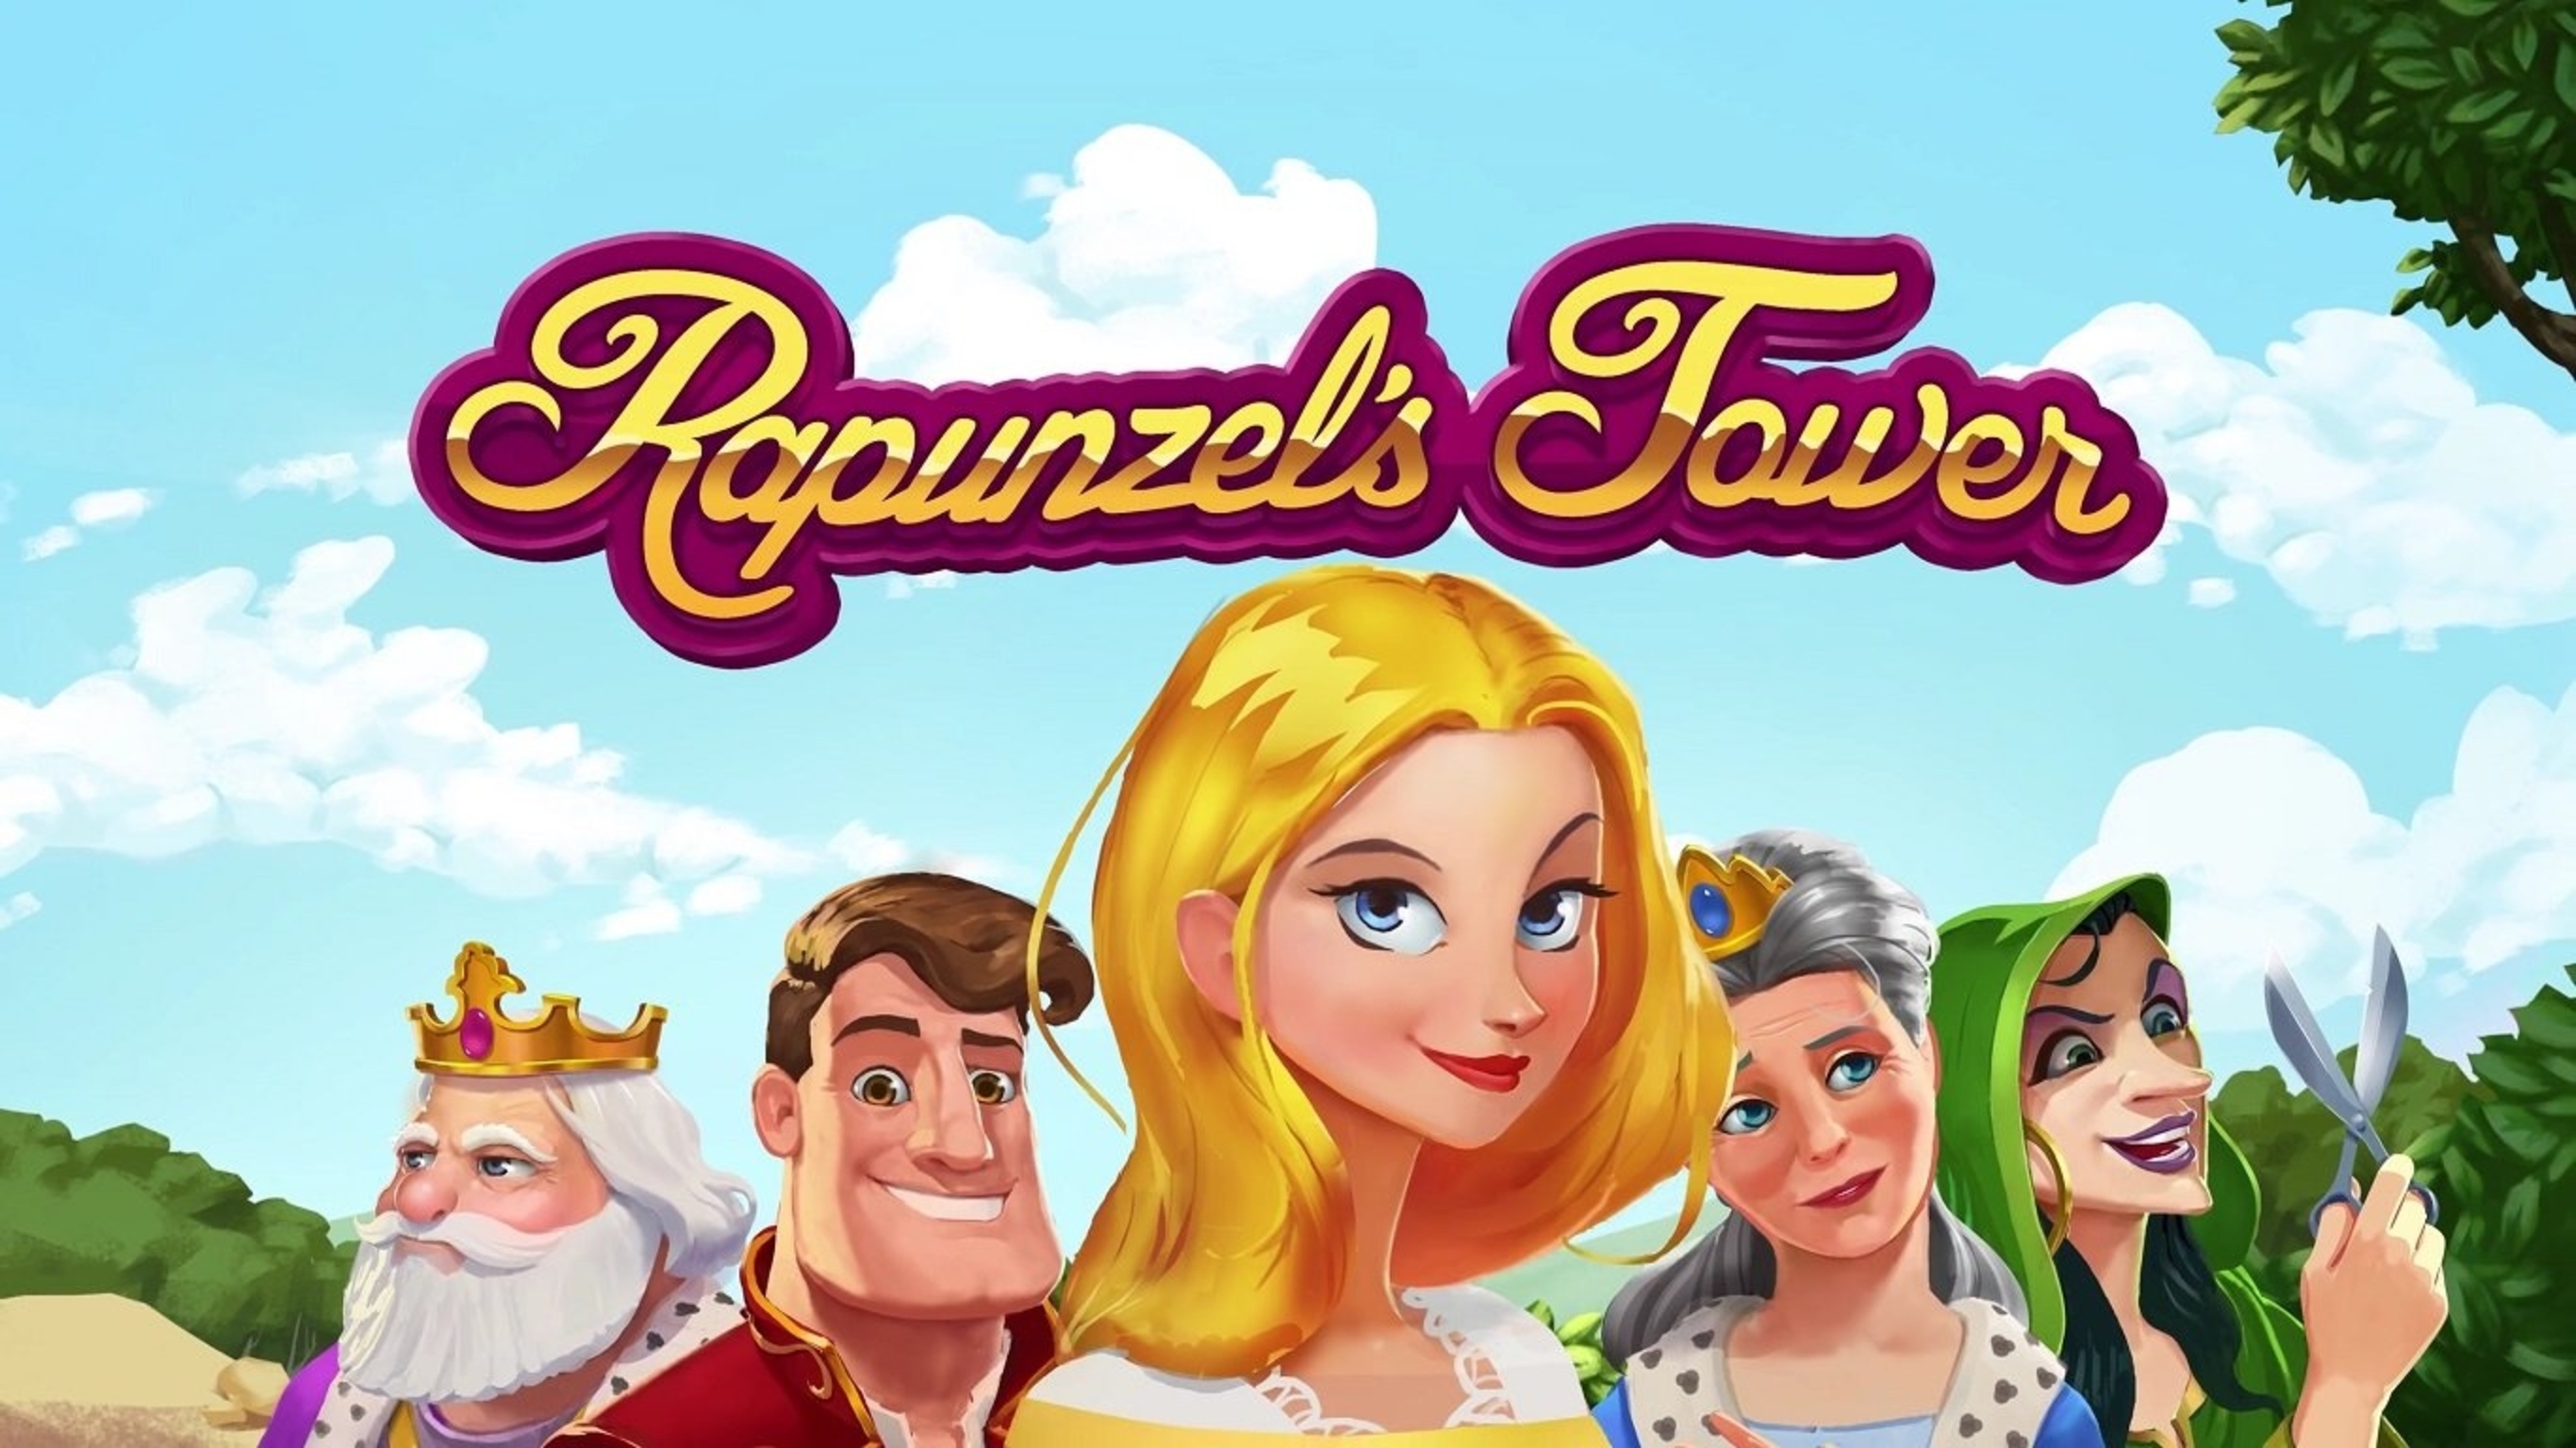 Rapunzel's Tower demo